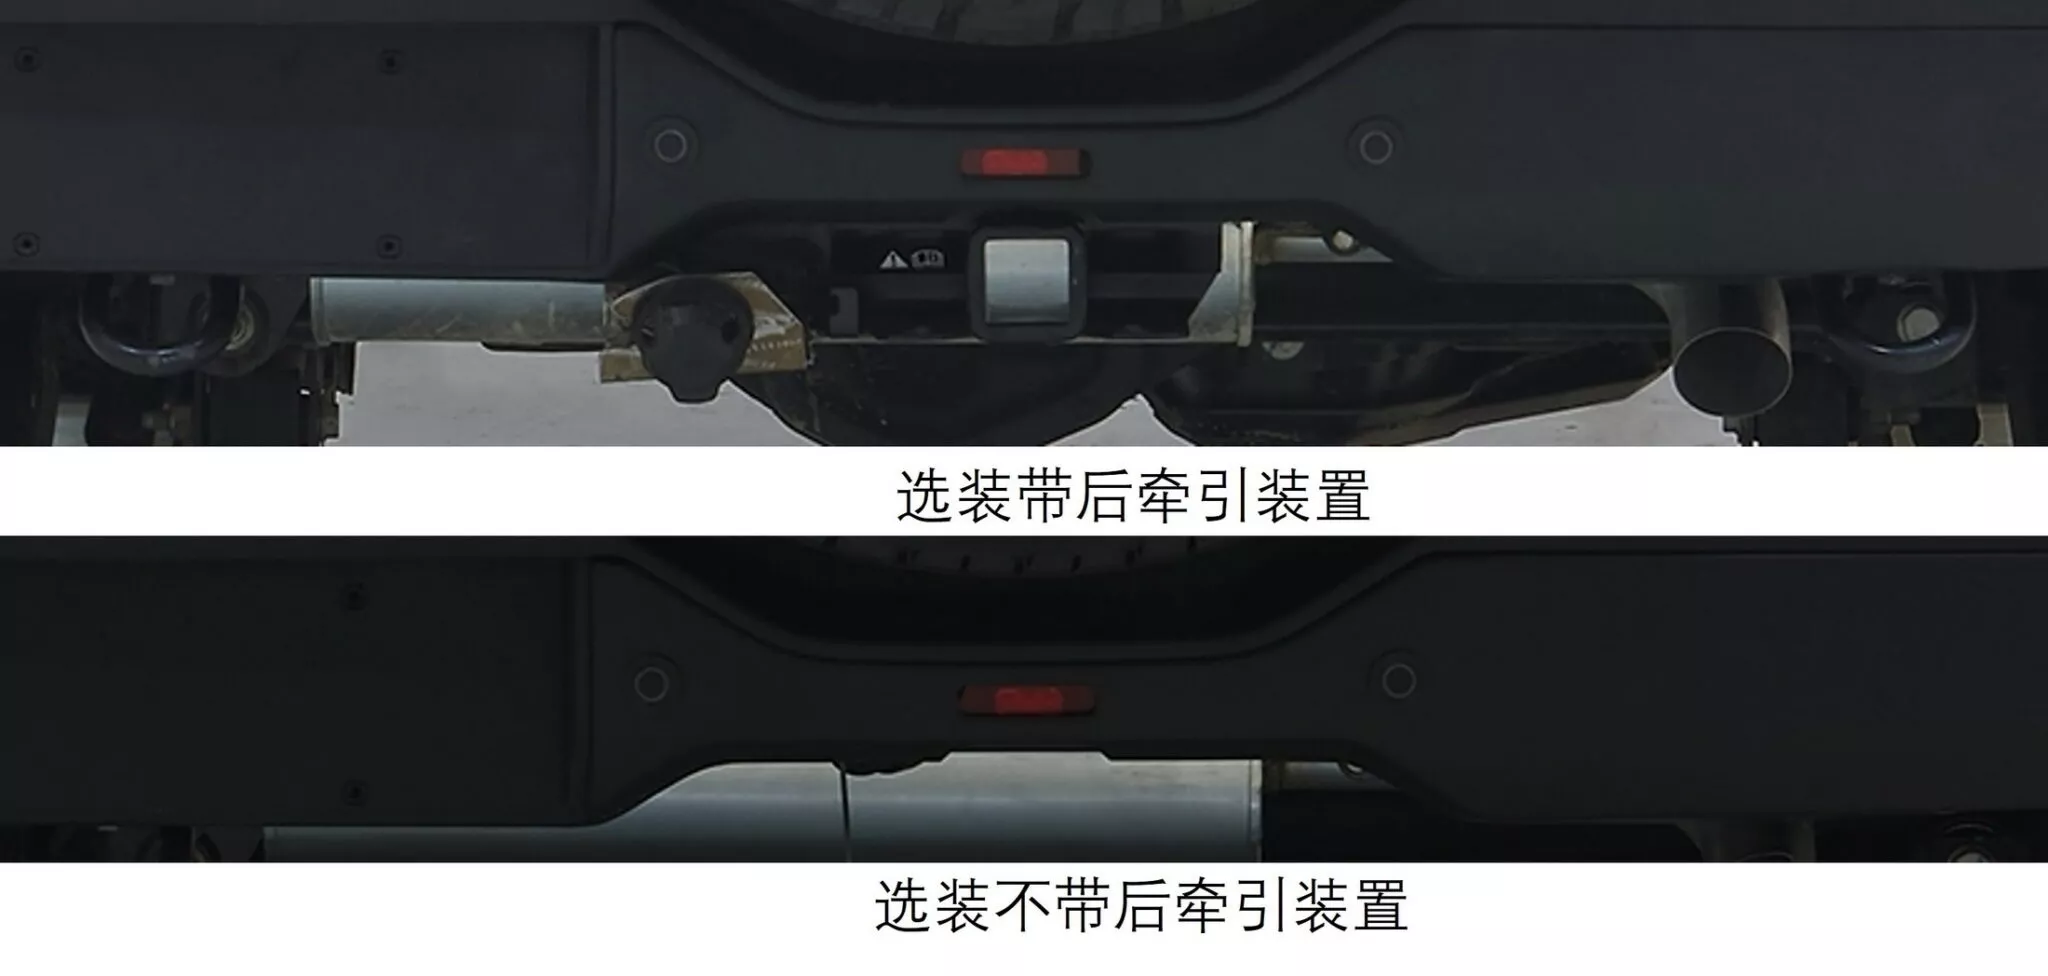 تسريب فورد برونكو النسخة الصينية بتحديثات خاصة ومحرك 2.3 لتر تيربو 5